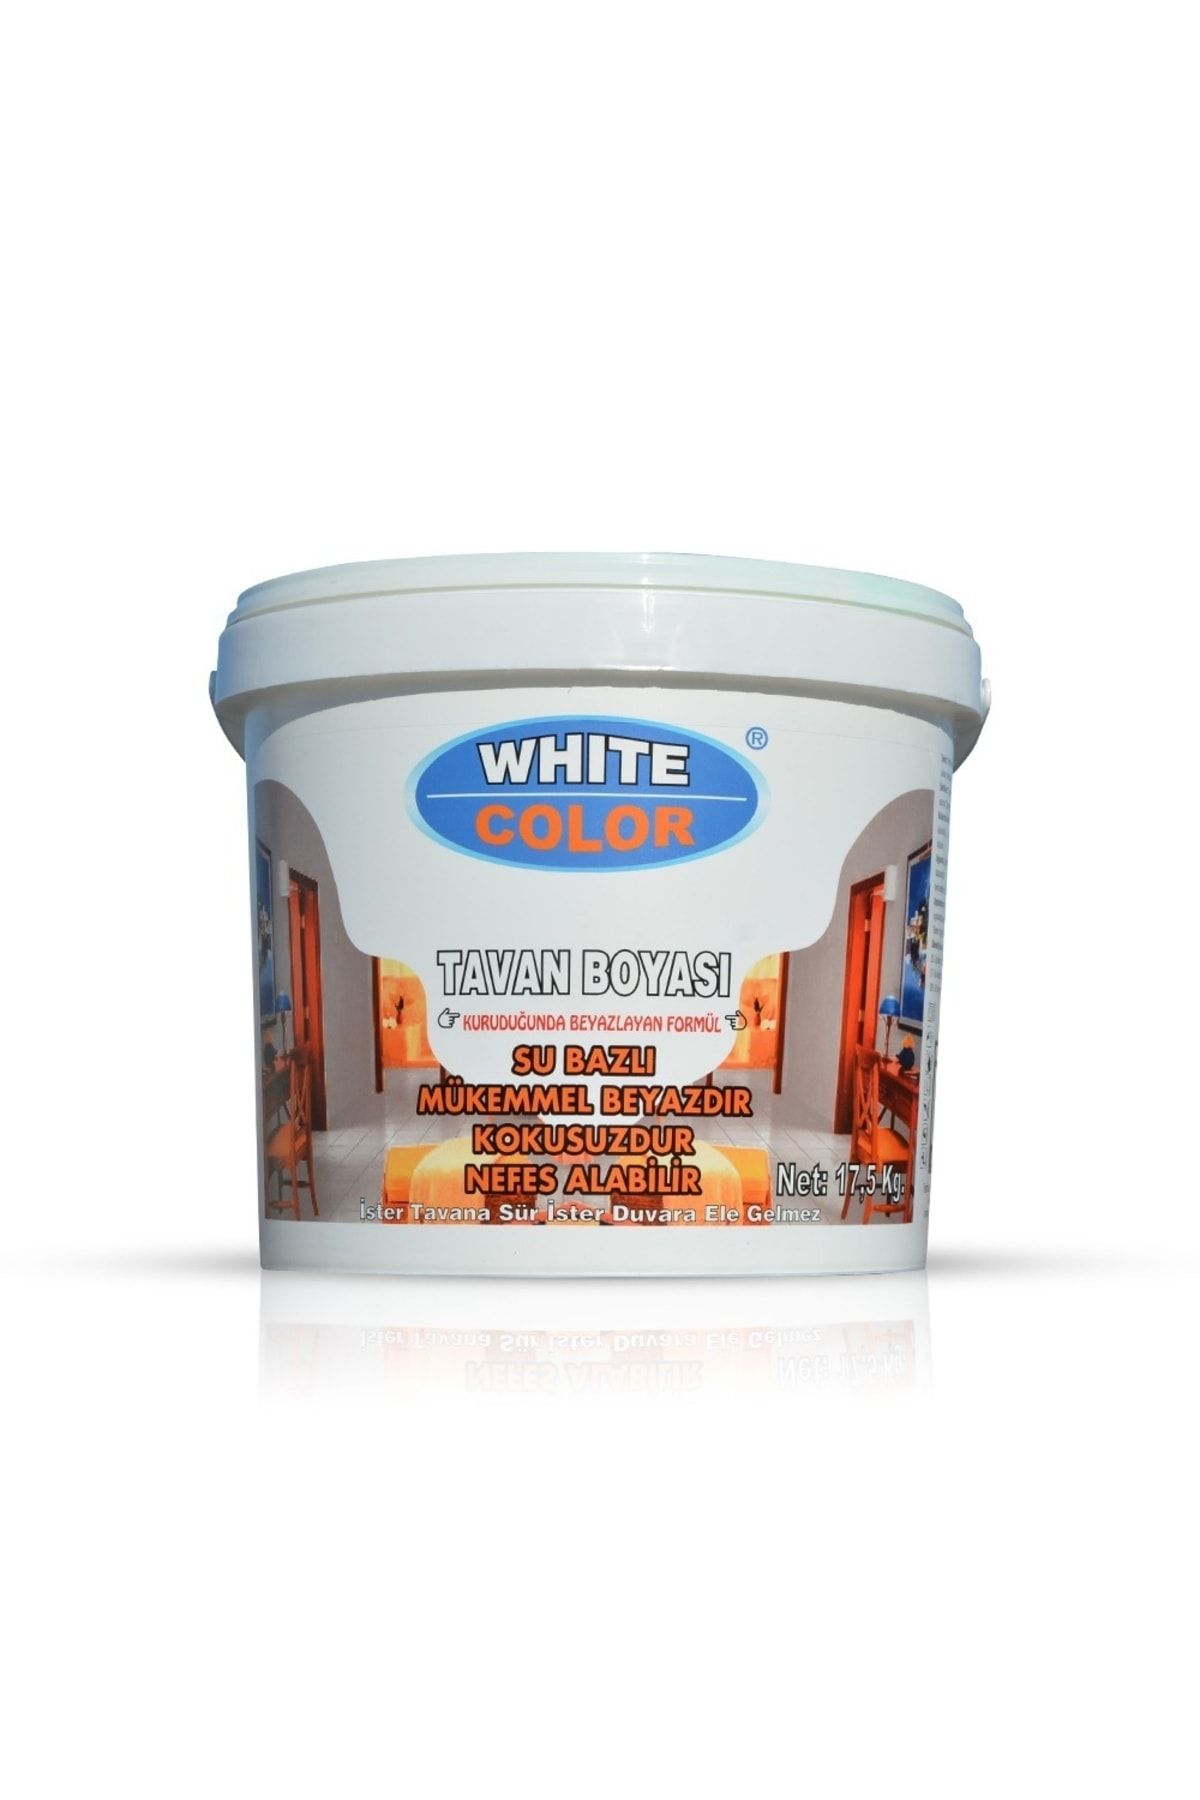 AYBOYA 'dan Net 17,5 Kg White&color Tavan Boyası.